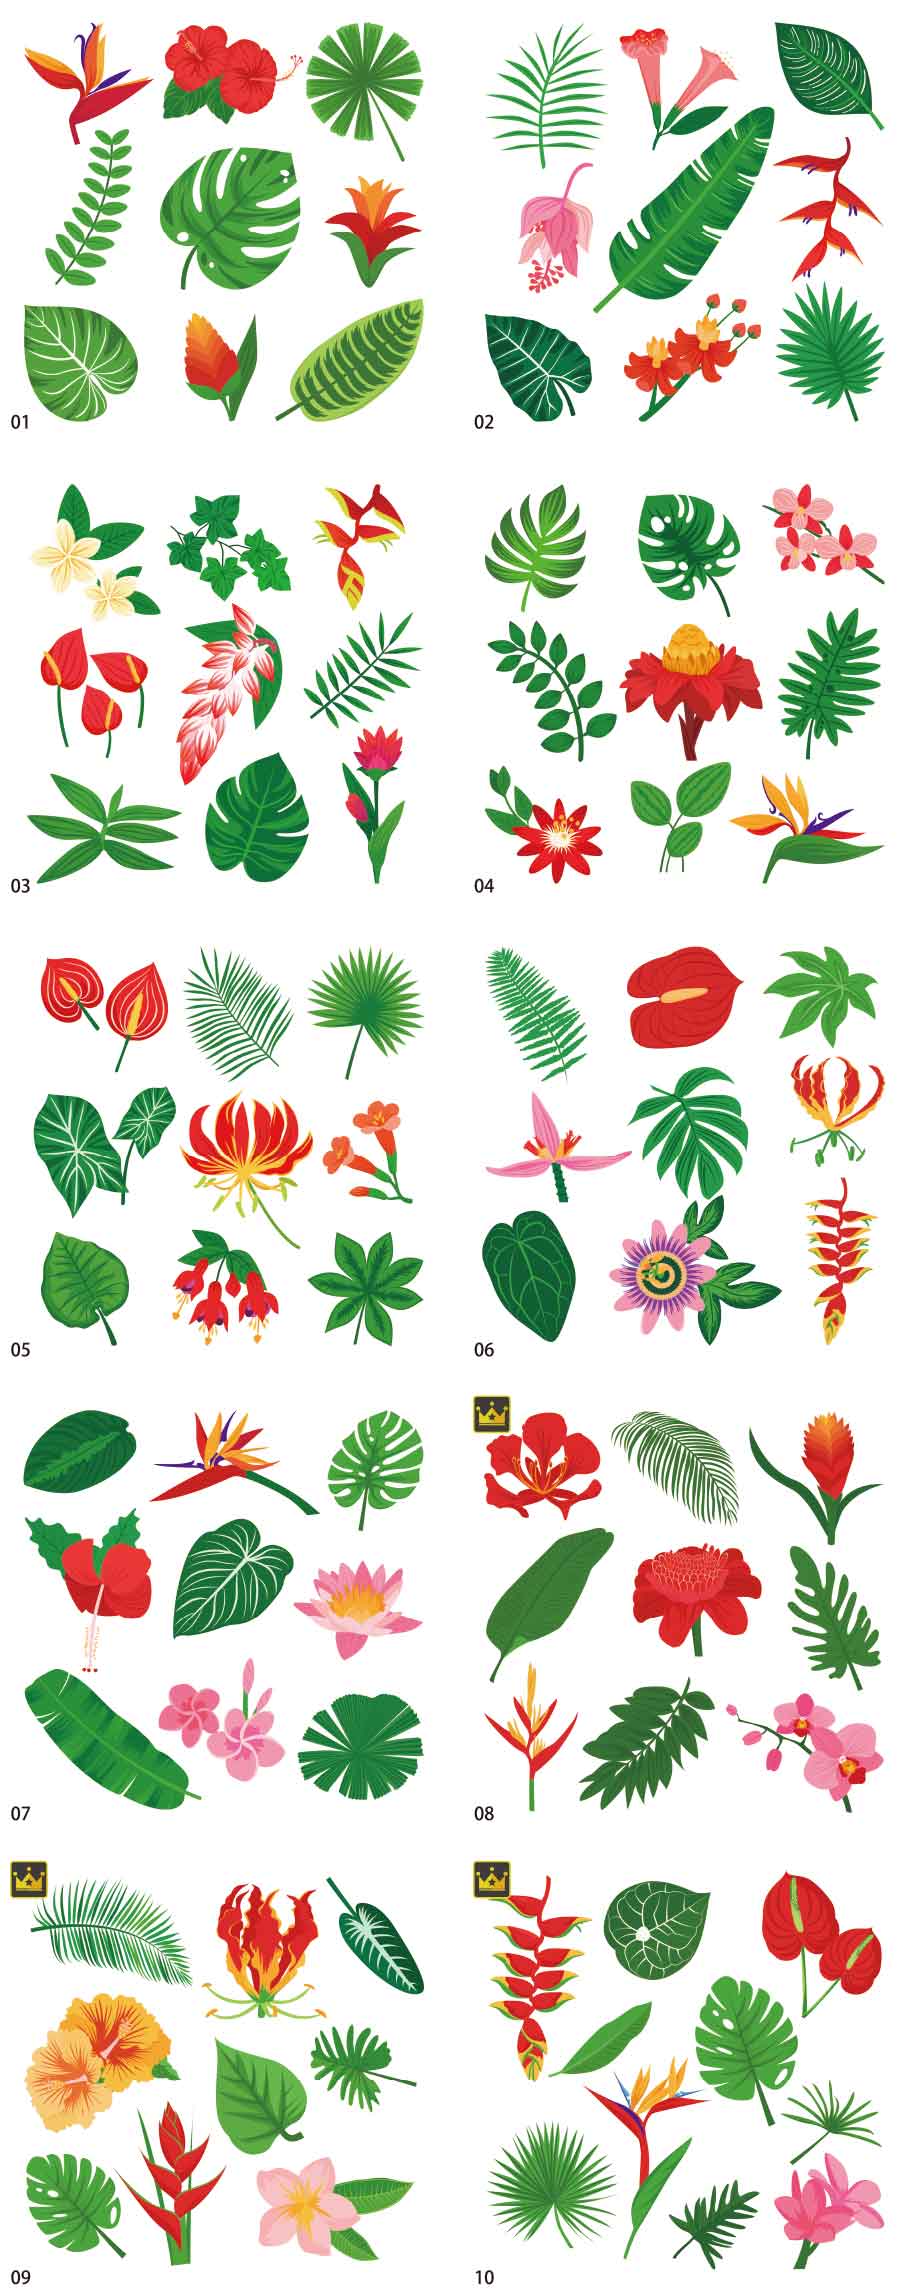 トロピカルな植物イラストコレクション